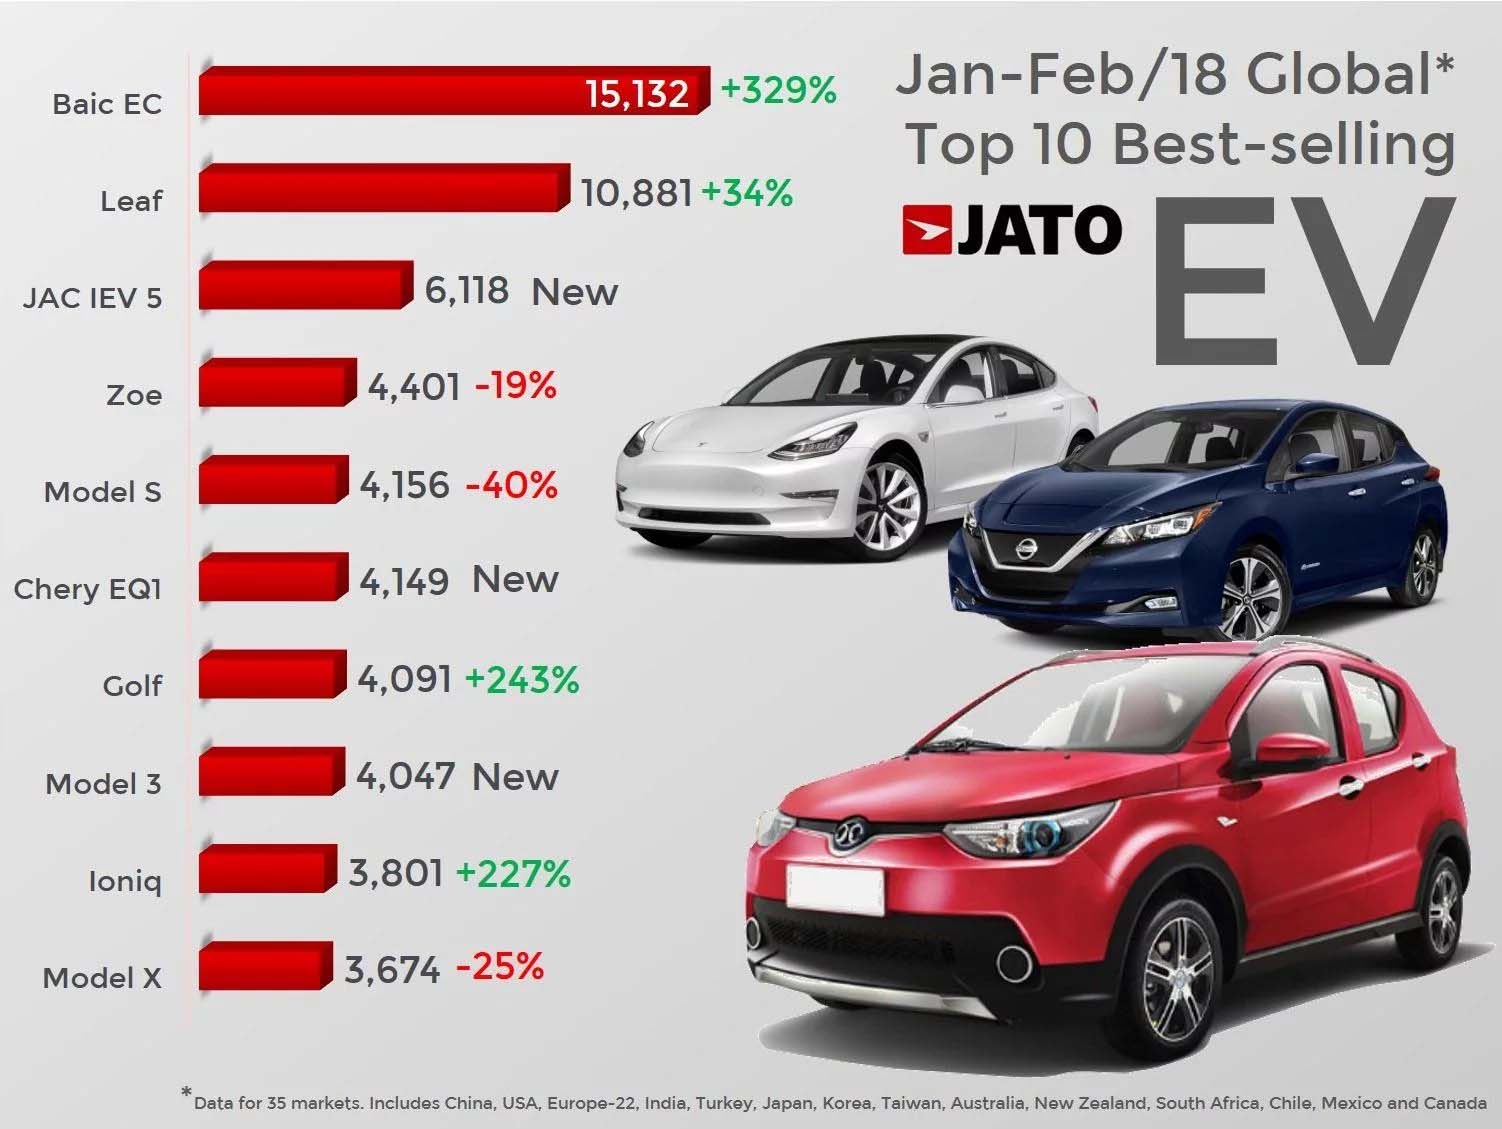 Berita, Data JATO Untuk Mobil Listrik: BAIC EV Pimpin Penjualan Mobil Listrik Sedunia, Kalahkan Leaf & Tesla